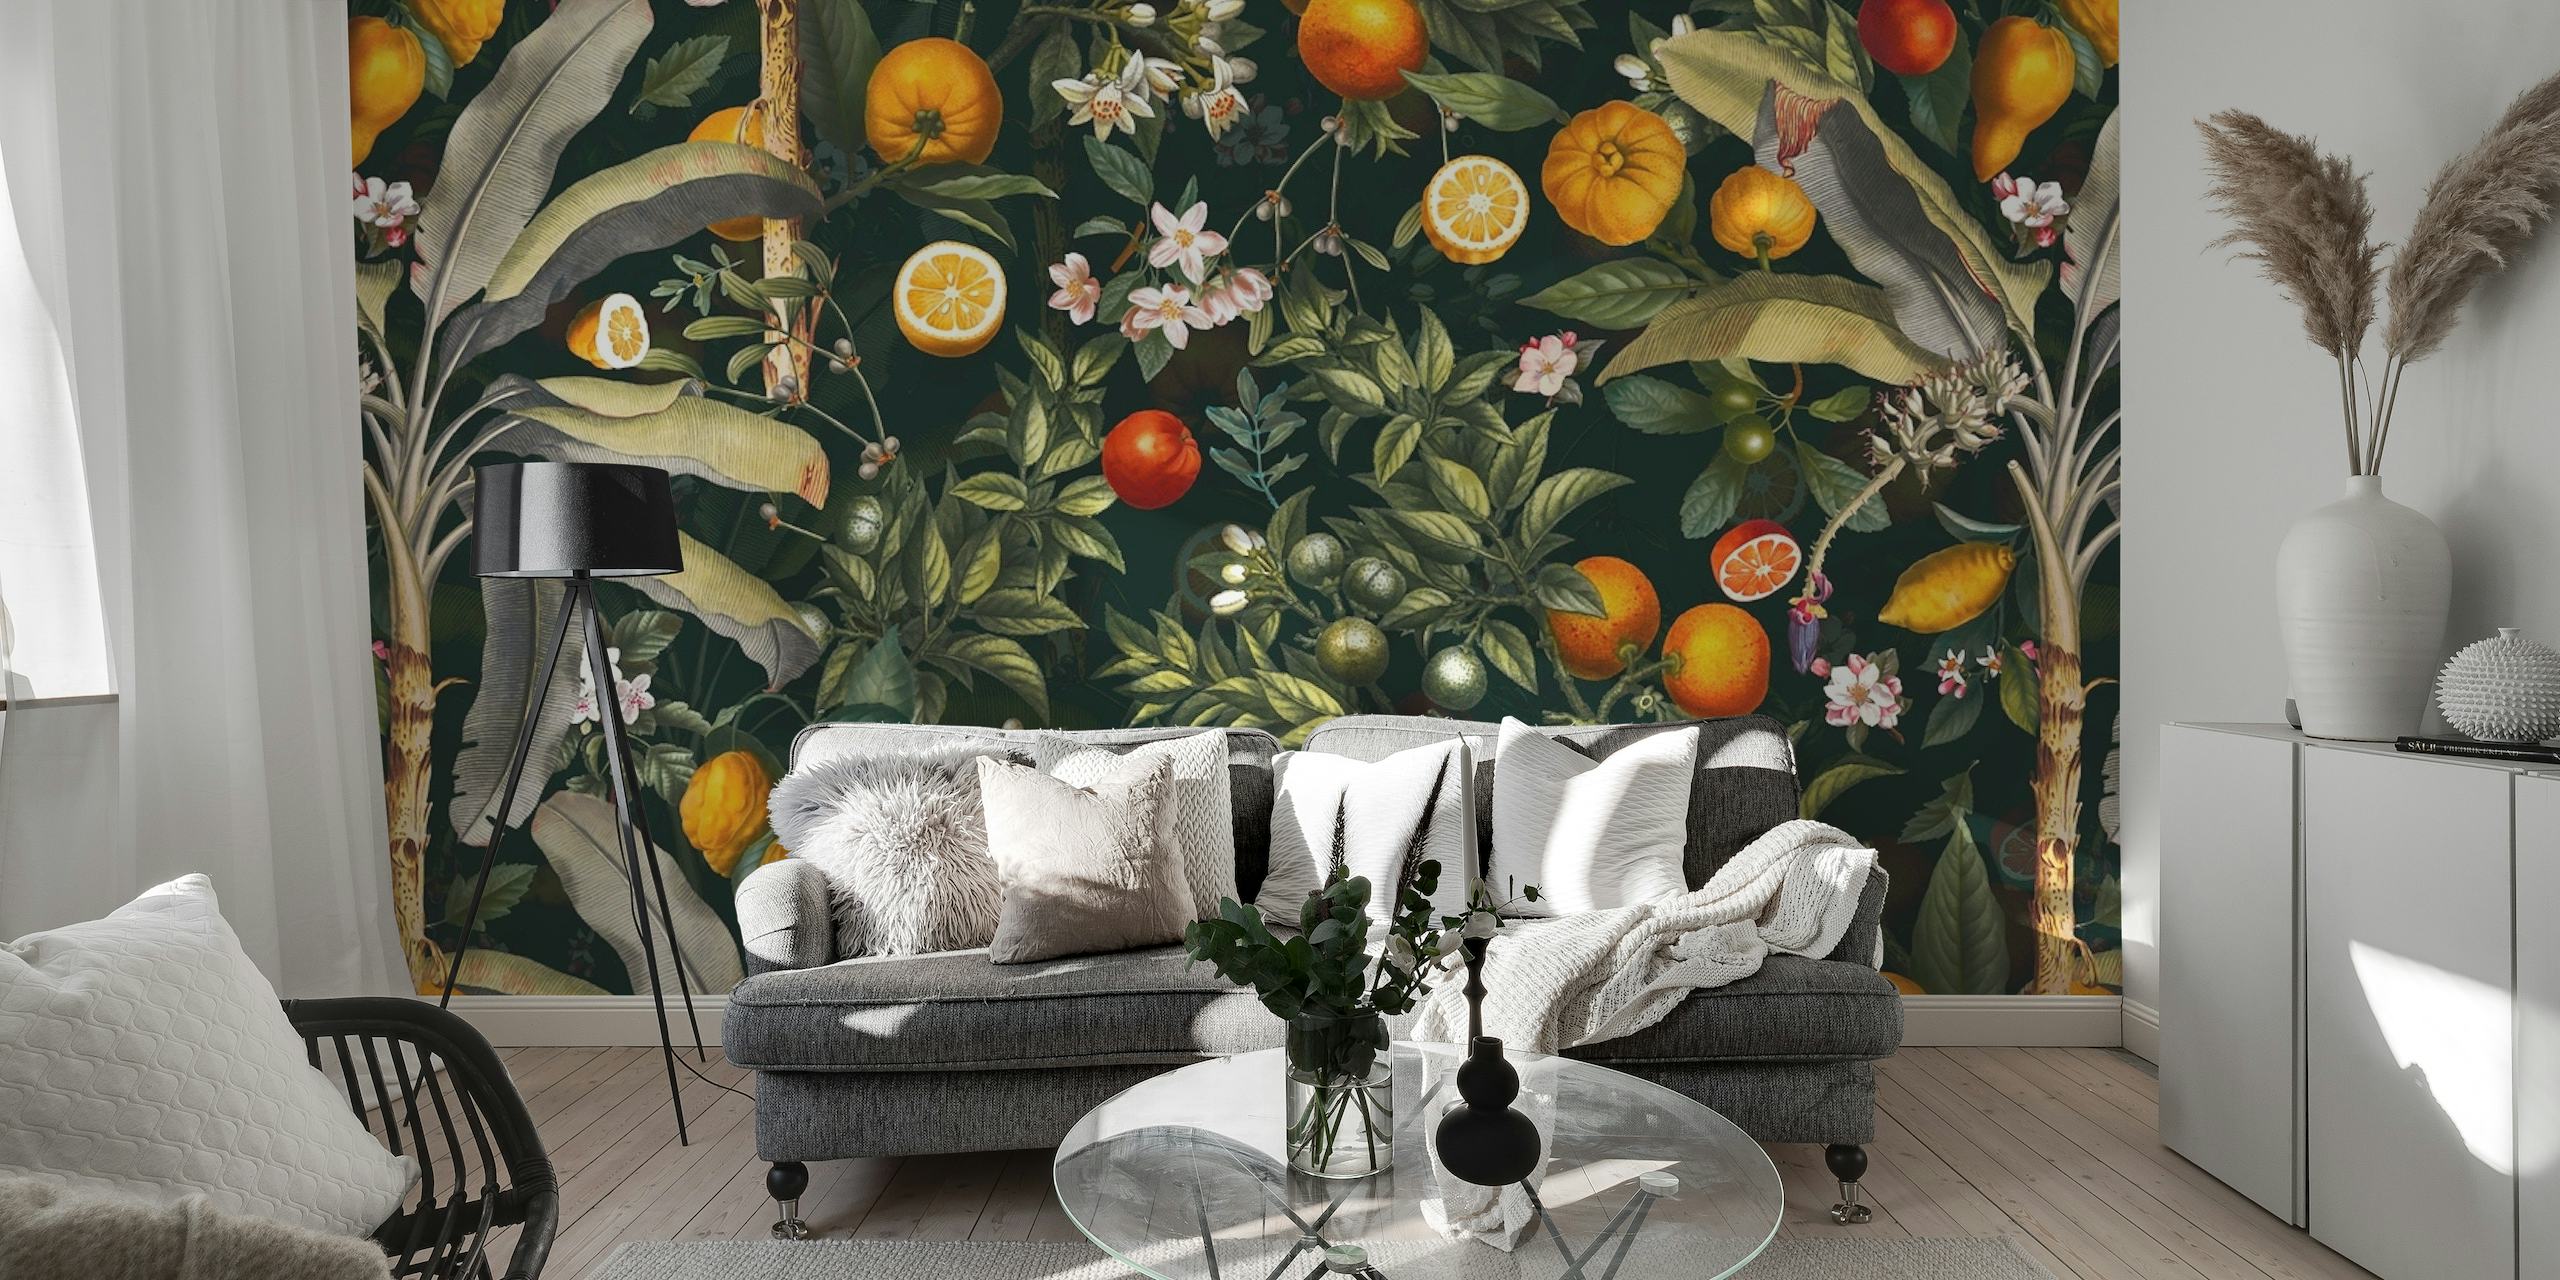 Zidna slika u vintage stilu s ilustriranim voćem i lišćem.